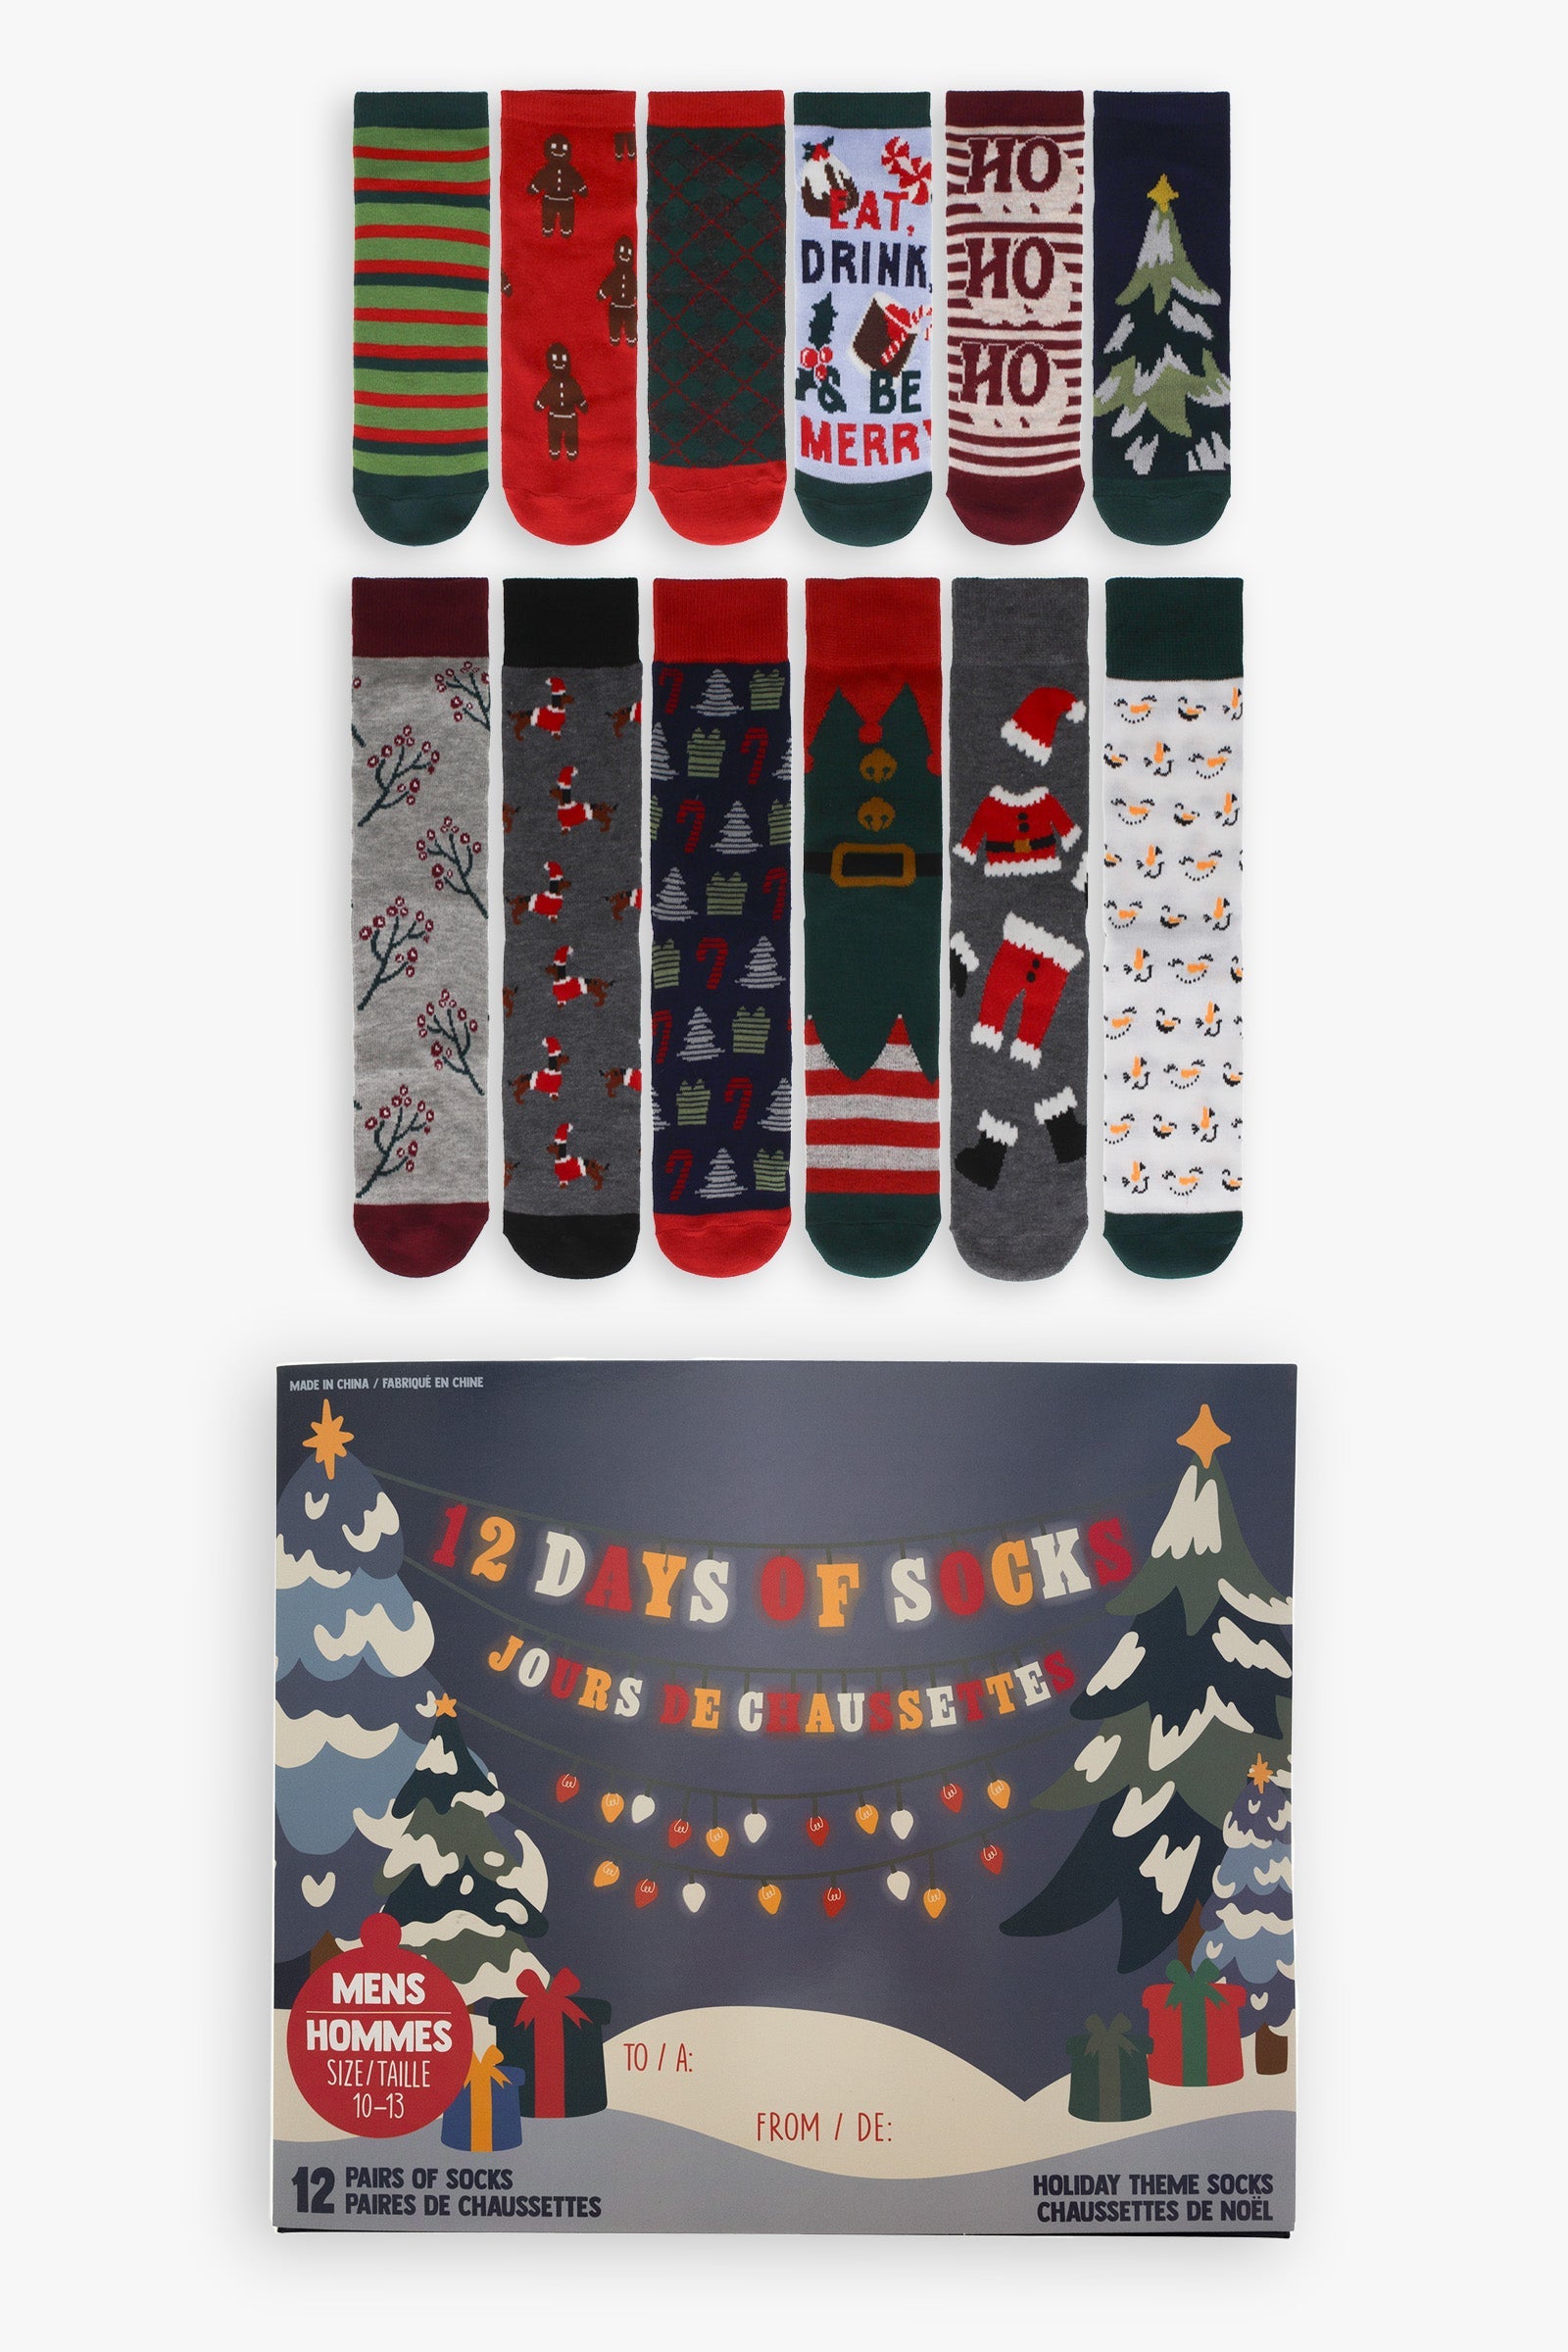 Men's "12 Days of Socks" Advent Calendar Gift Box | 12 Days of Holiday Socks | Men's Sock Size 10-13, Shoe Size 7-12